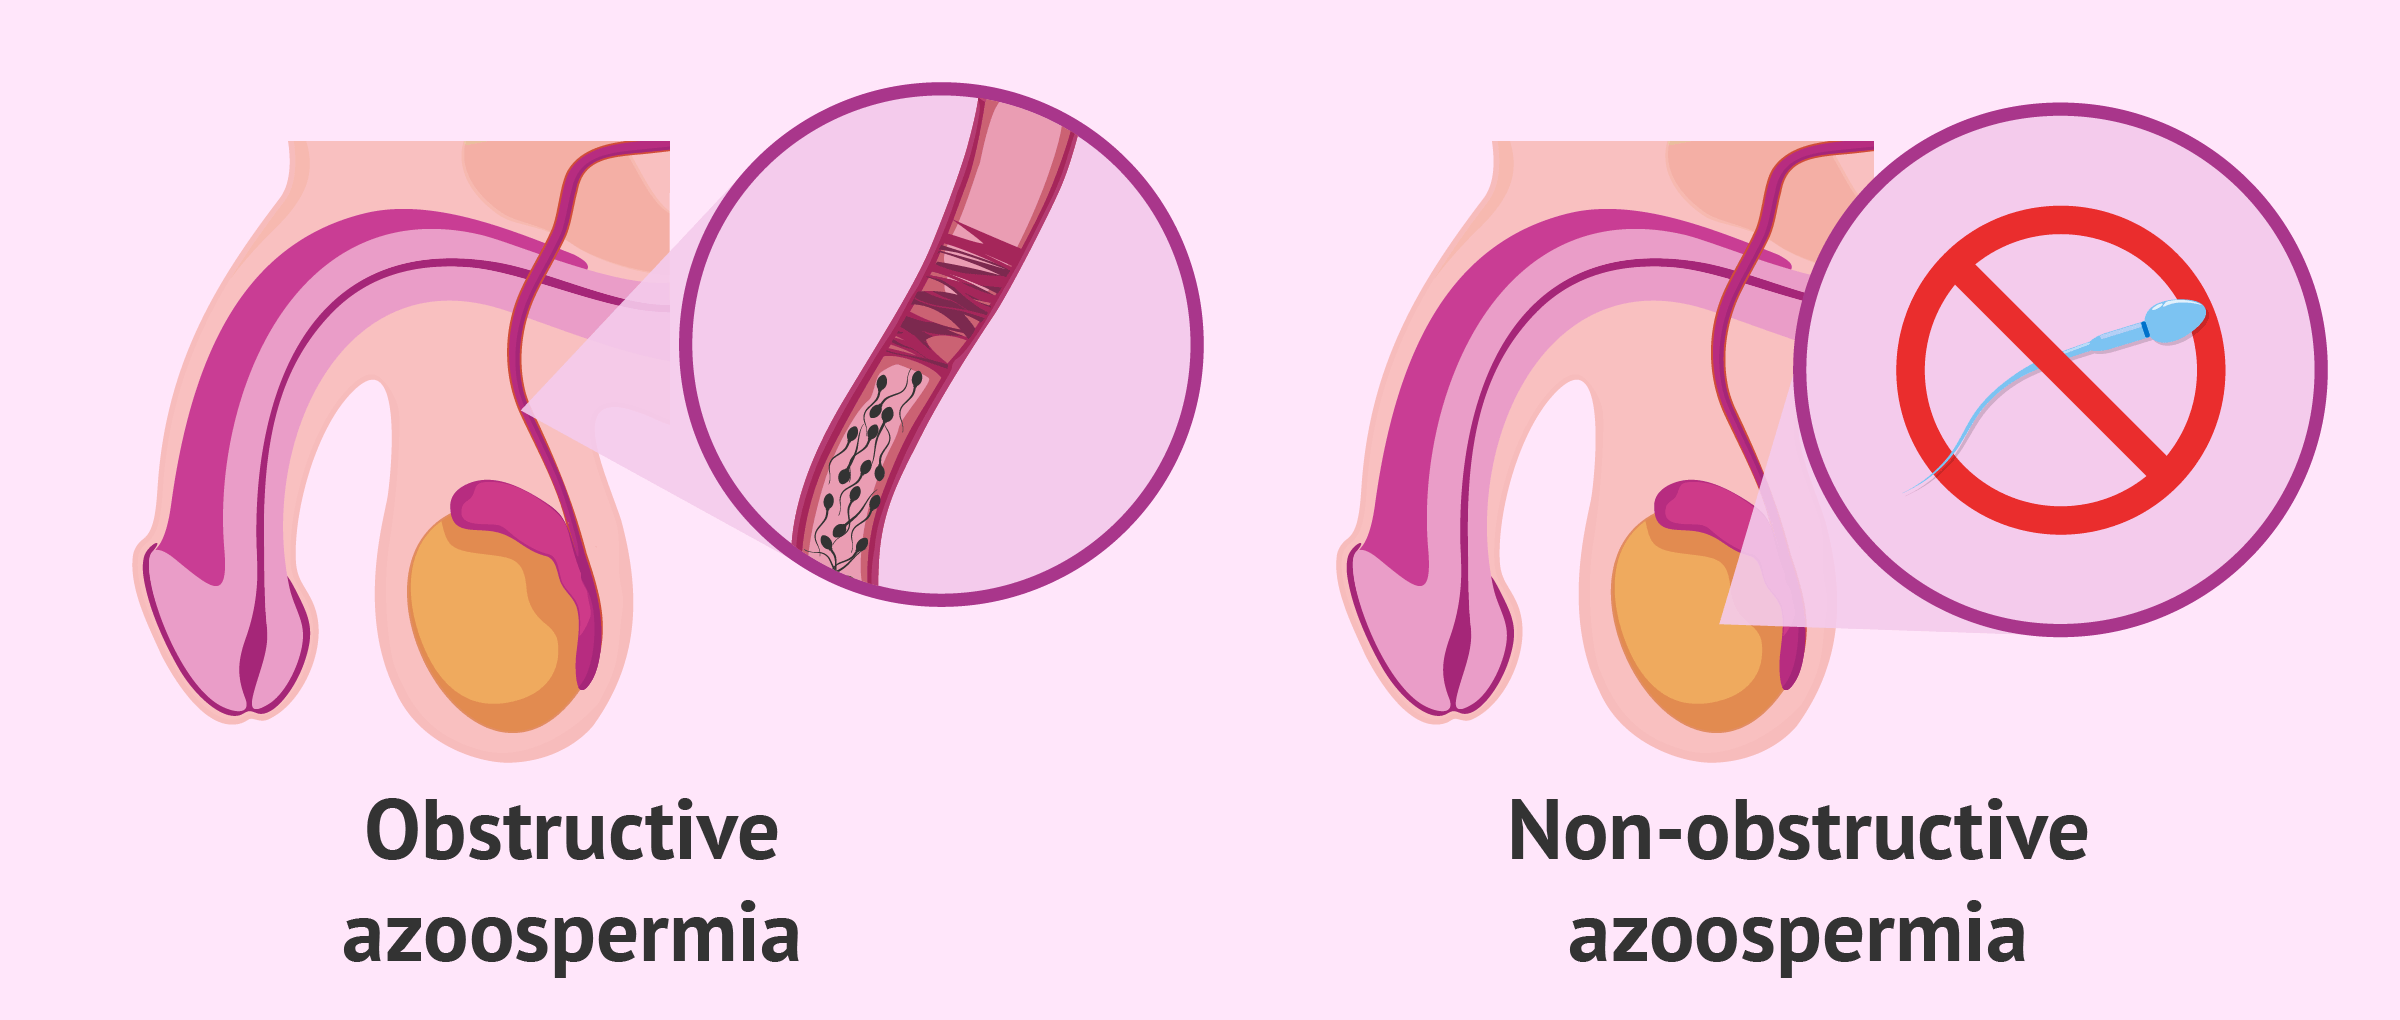 Types of azoospermia